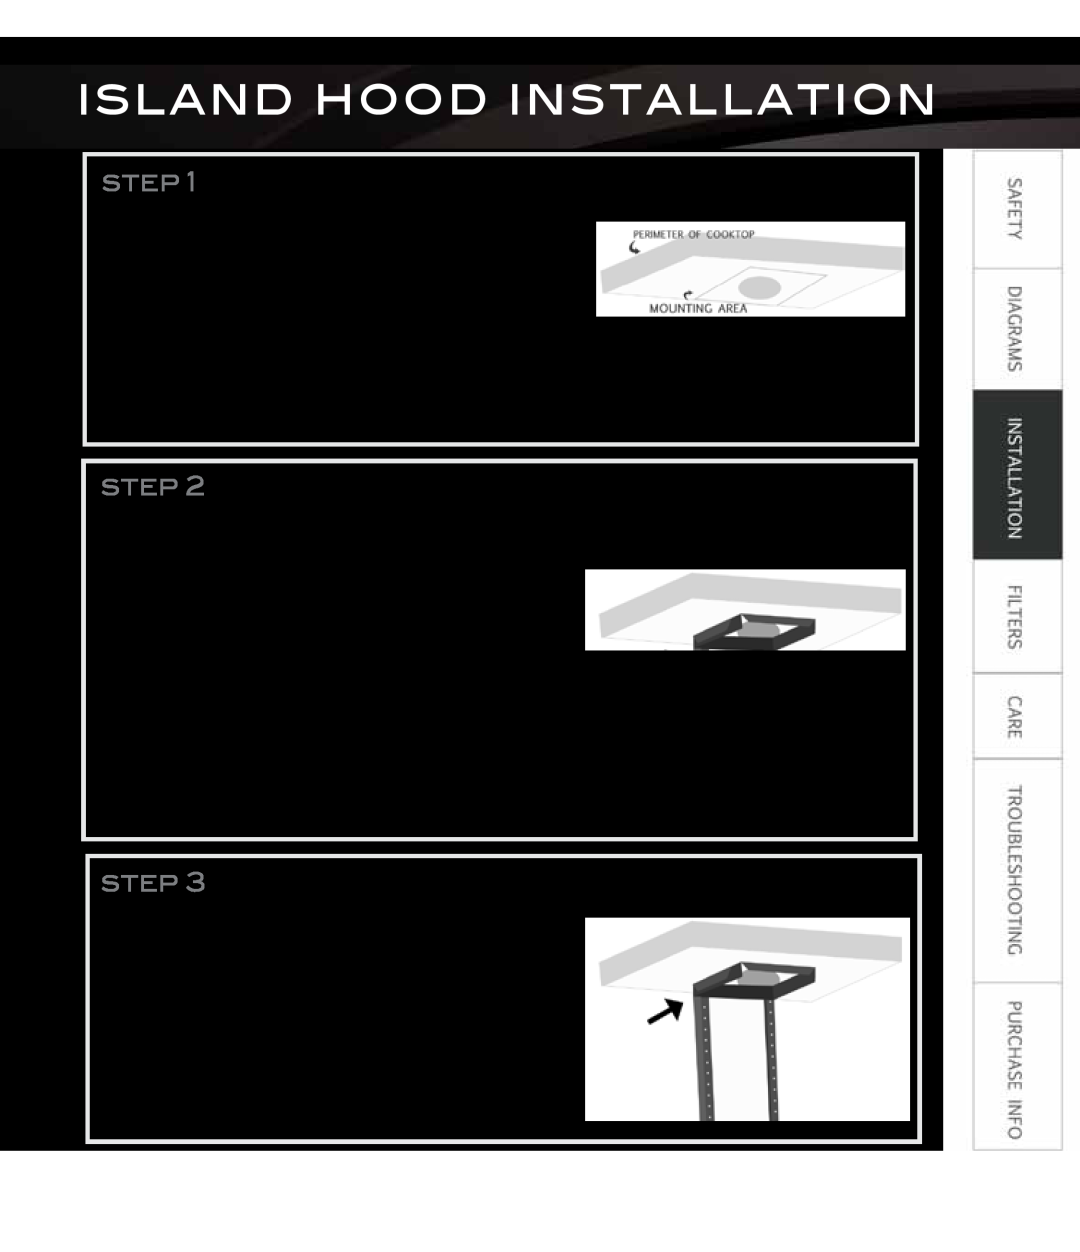 Proline PLS1576, PLS1570 Island Hood Installation, Mark ceiling, Install ceiling bracket, Install support brackets 